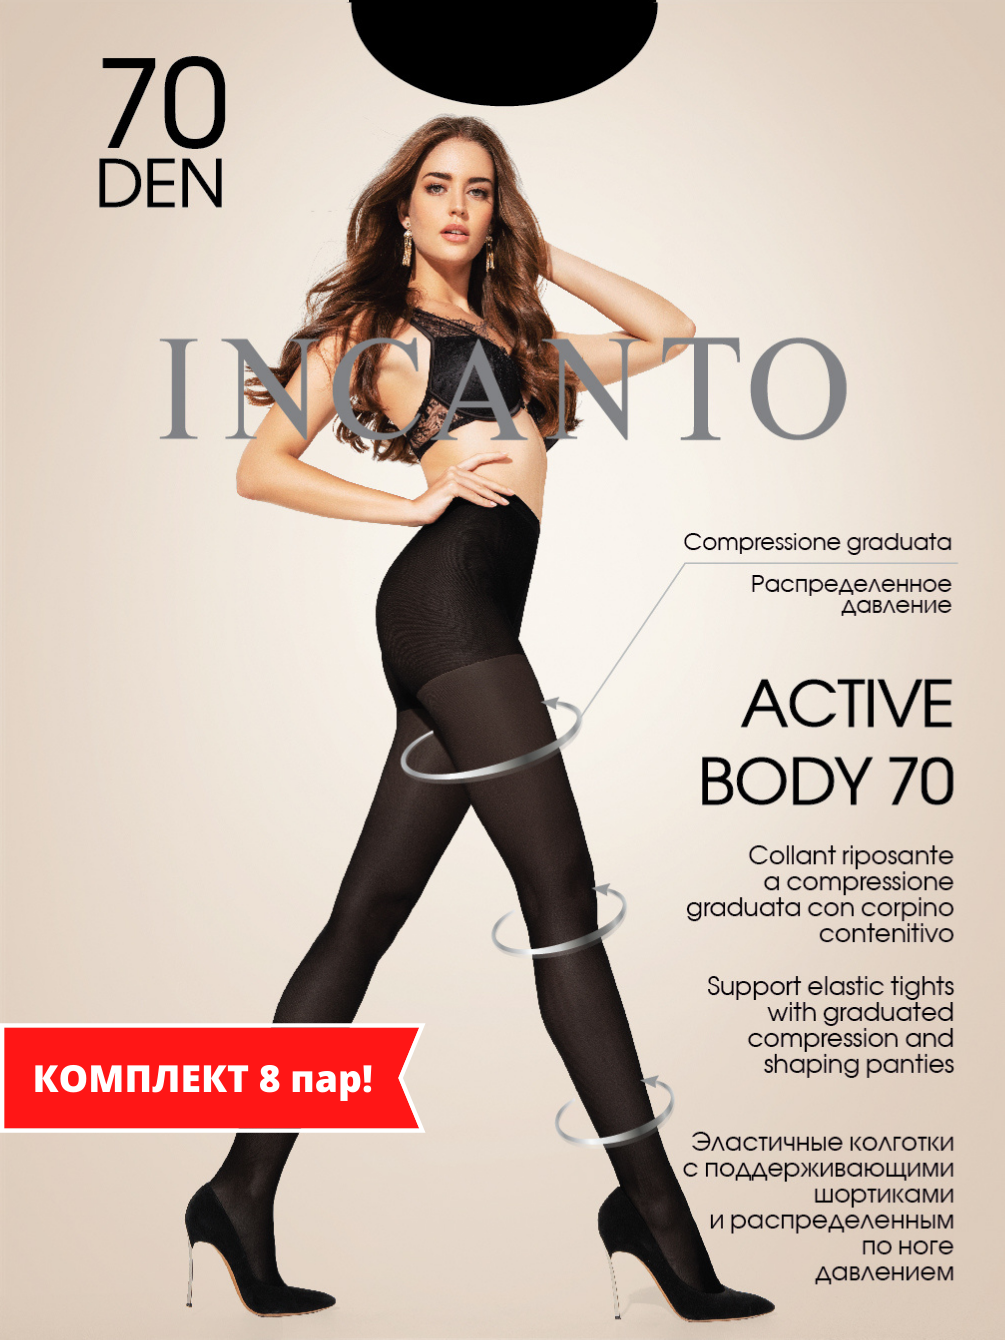 Active Body 70 